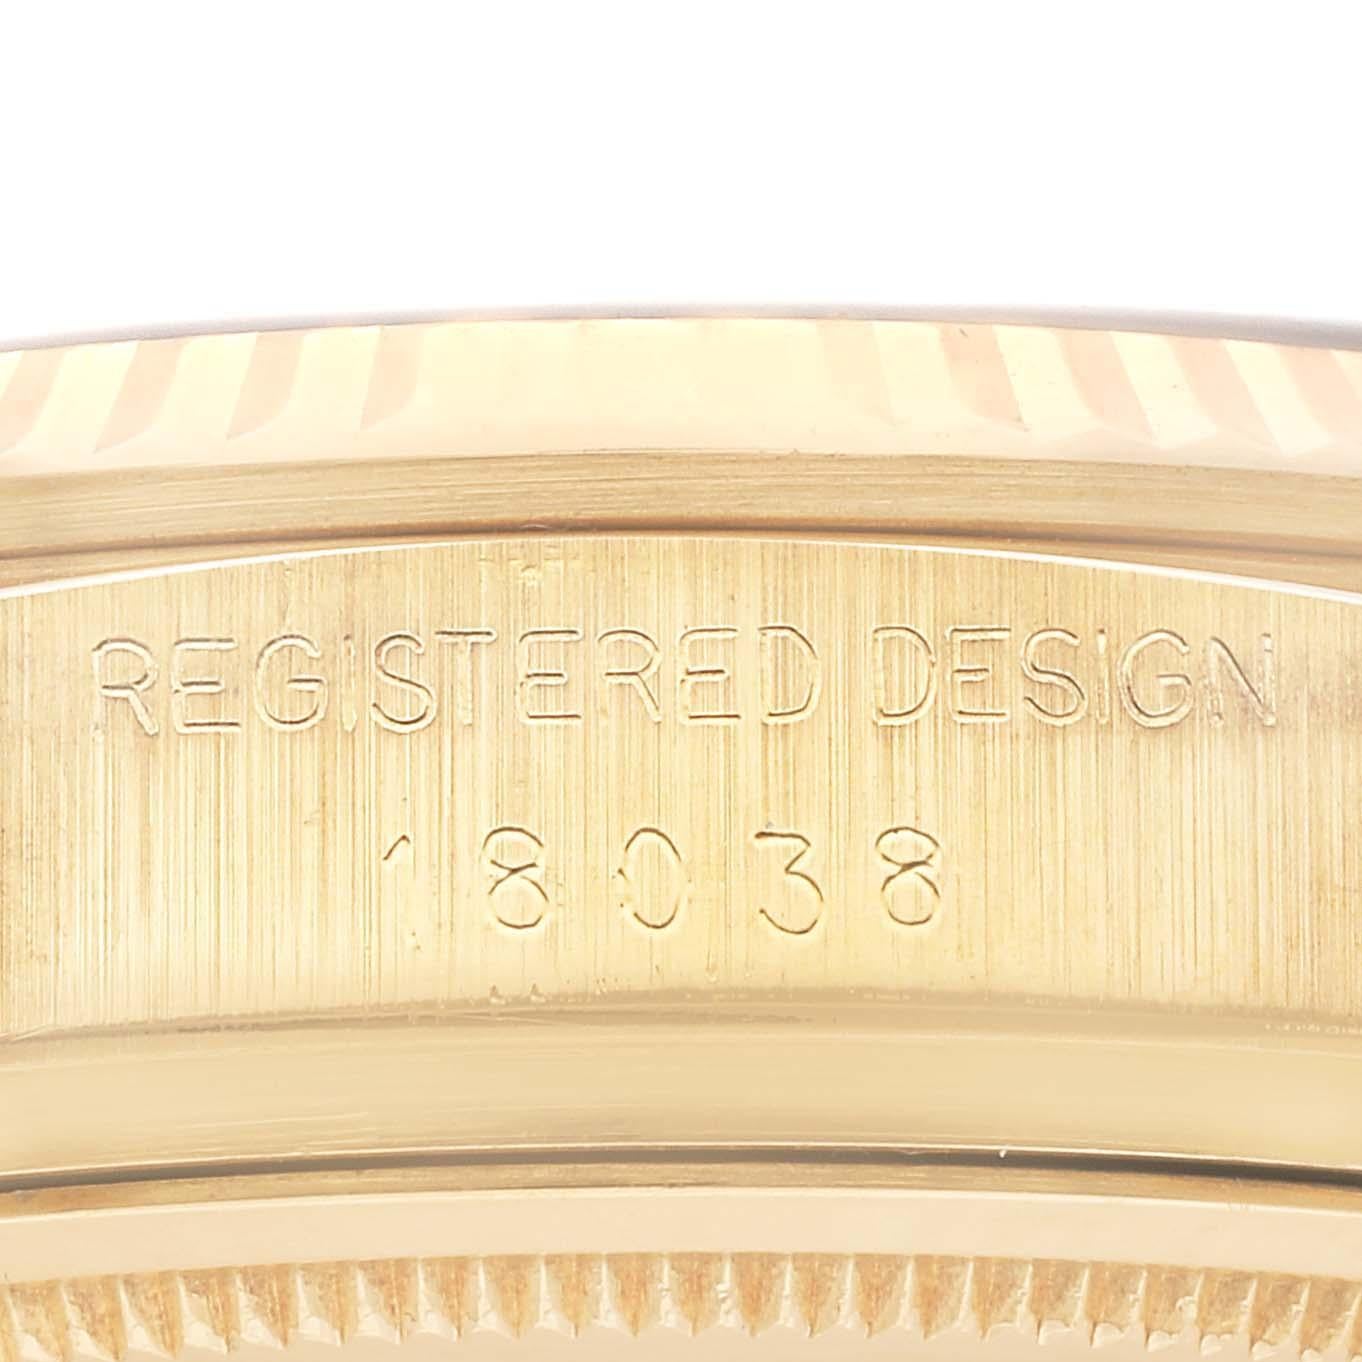 Rolex President Day-Date Montre homme or jaune cadran bleu 18038. Mouvement à remontage automatique certifié chronomètre. Boîtier en or jaune 18 carats d'un diamètre de 36,0 mm.  Logo Rolex sur une couronne. Lunette cannelée en or jaune 18k. Verre